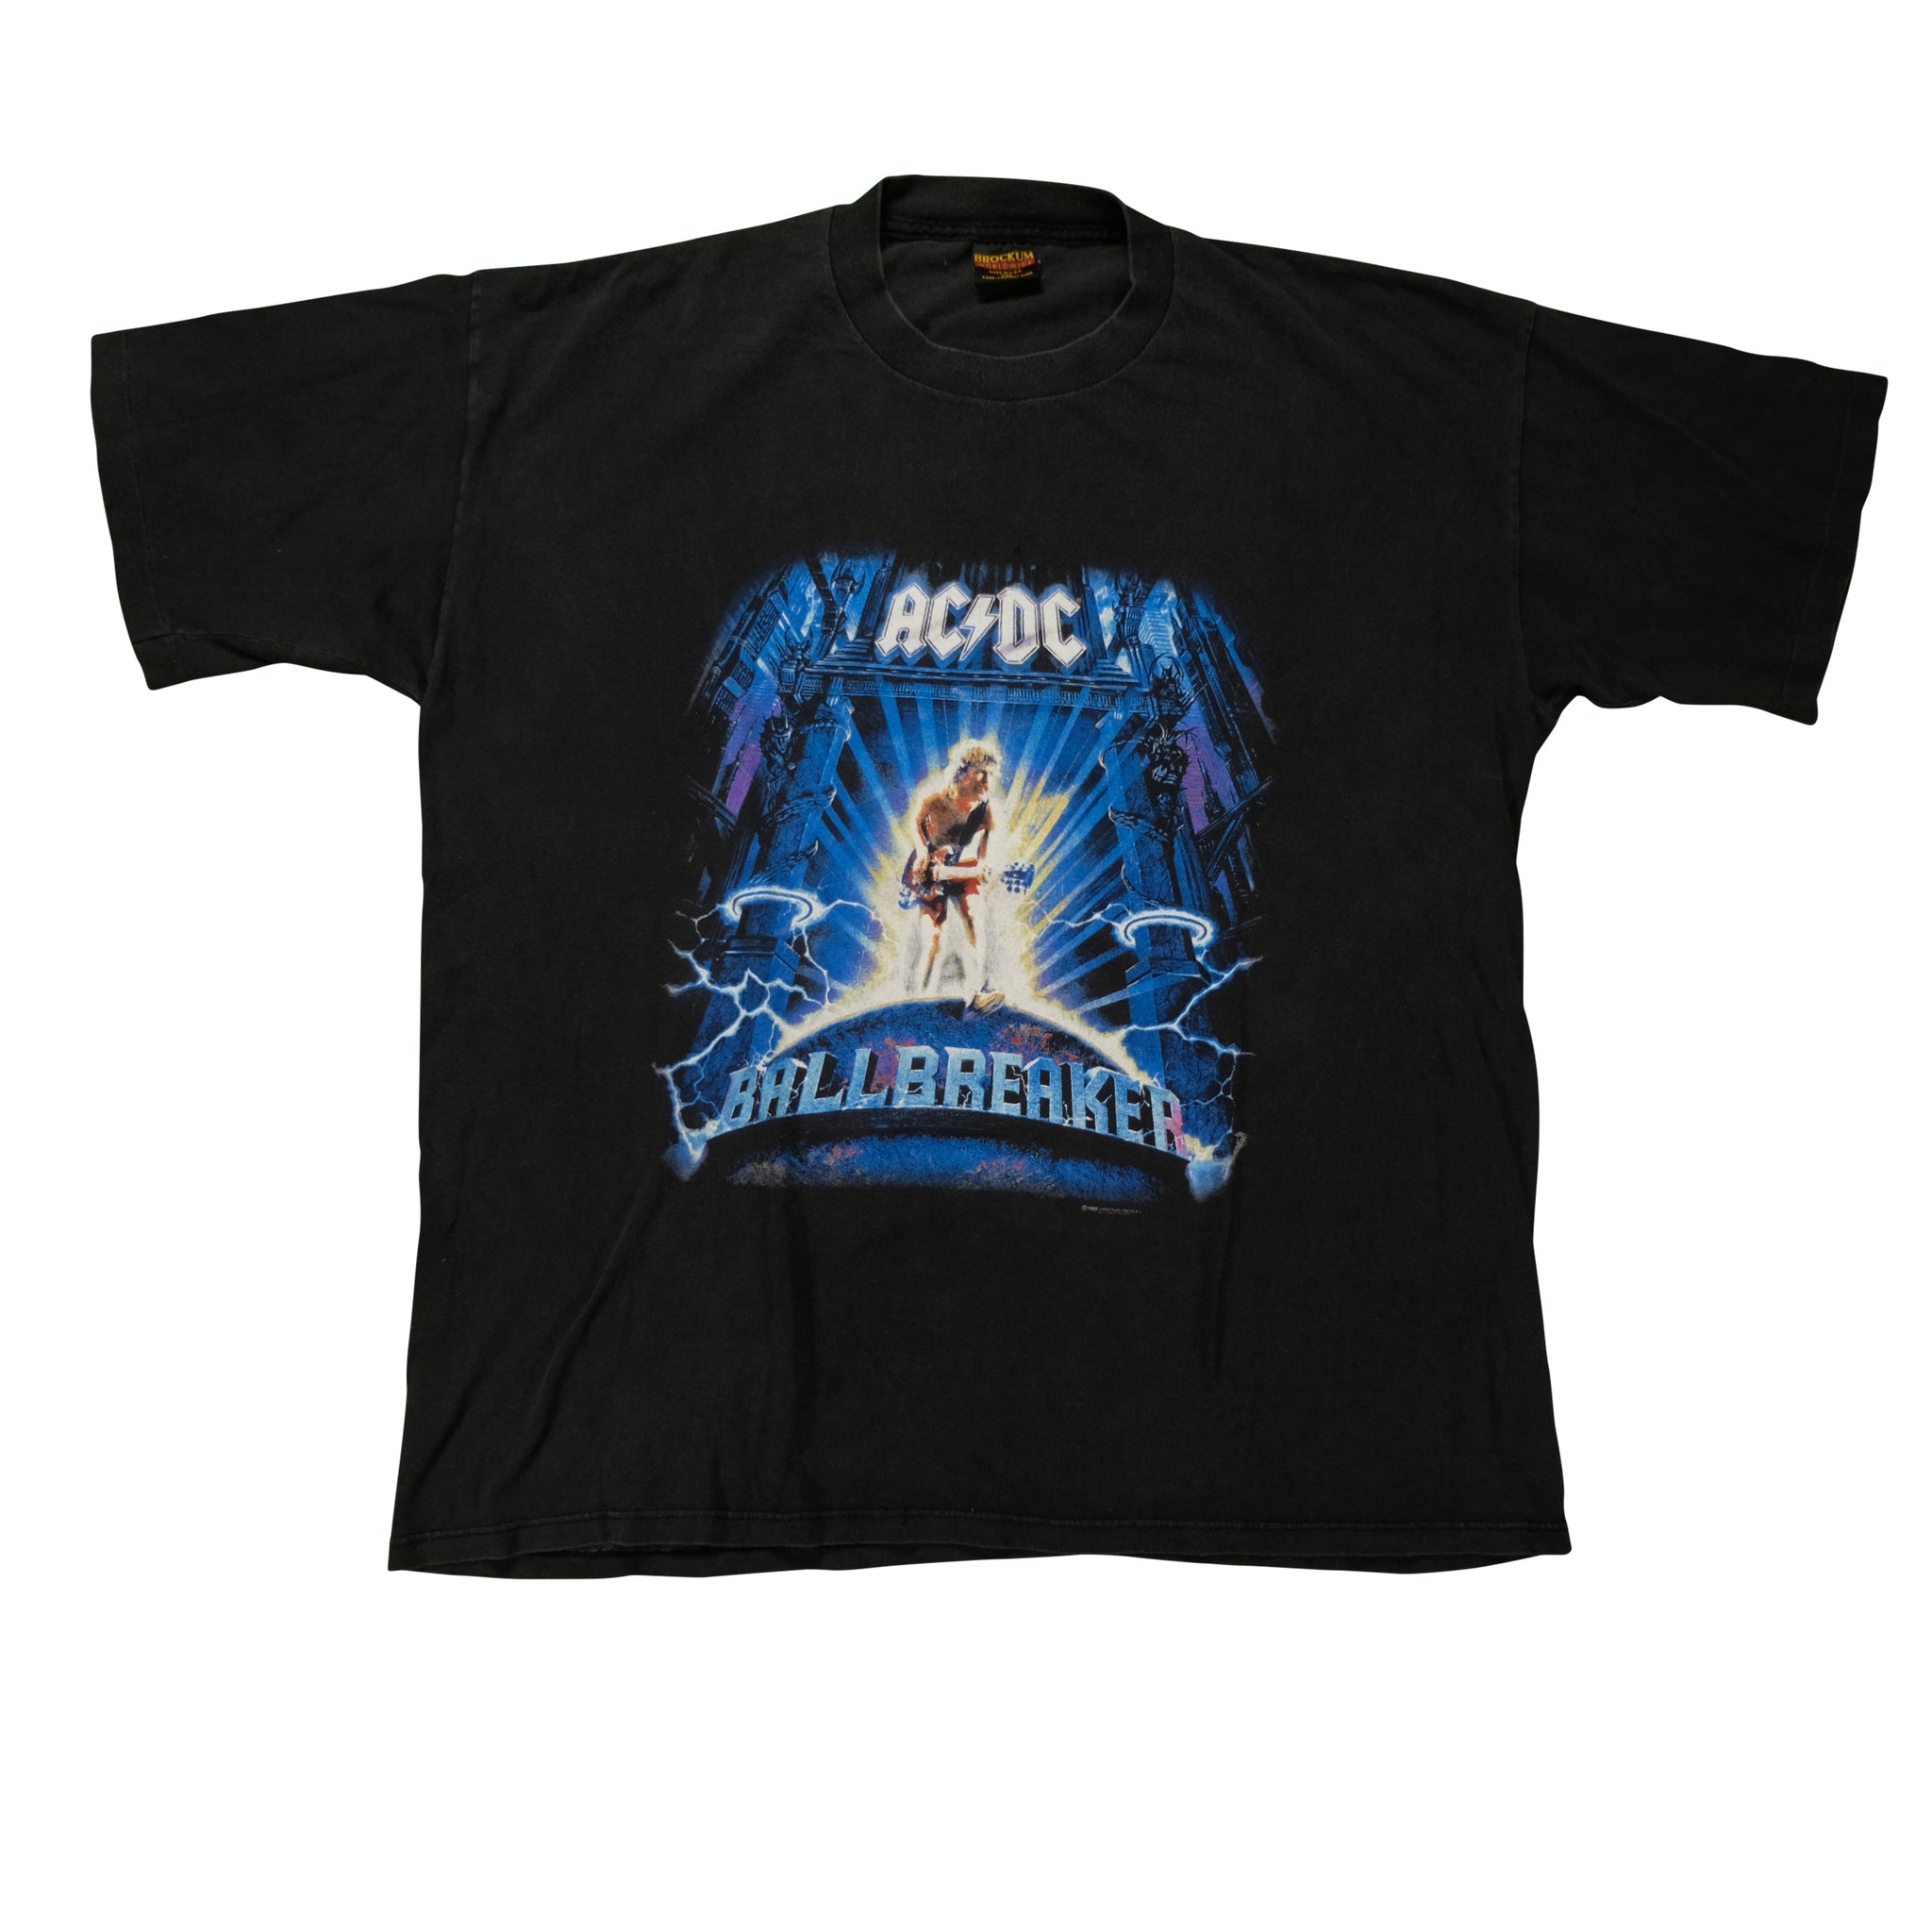 Vintage 1996 AC/DC Ballbreaker Tour Tee by Brockum | Reset Vintage